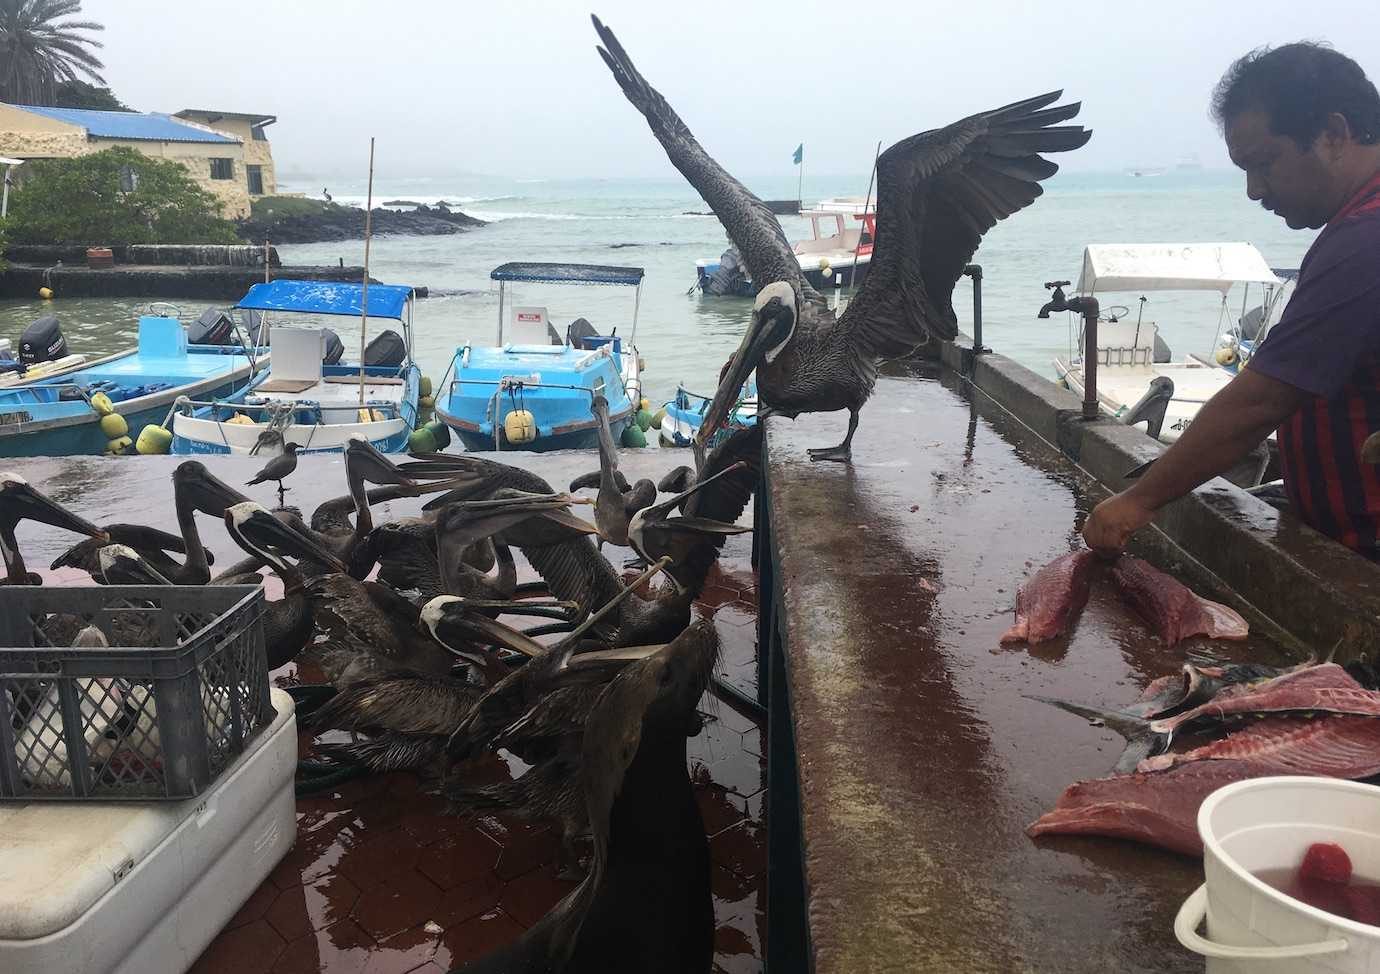 fish market pelicans sealion santa cruz